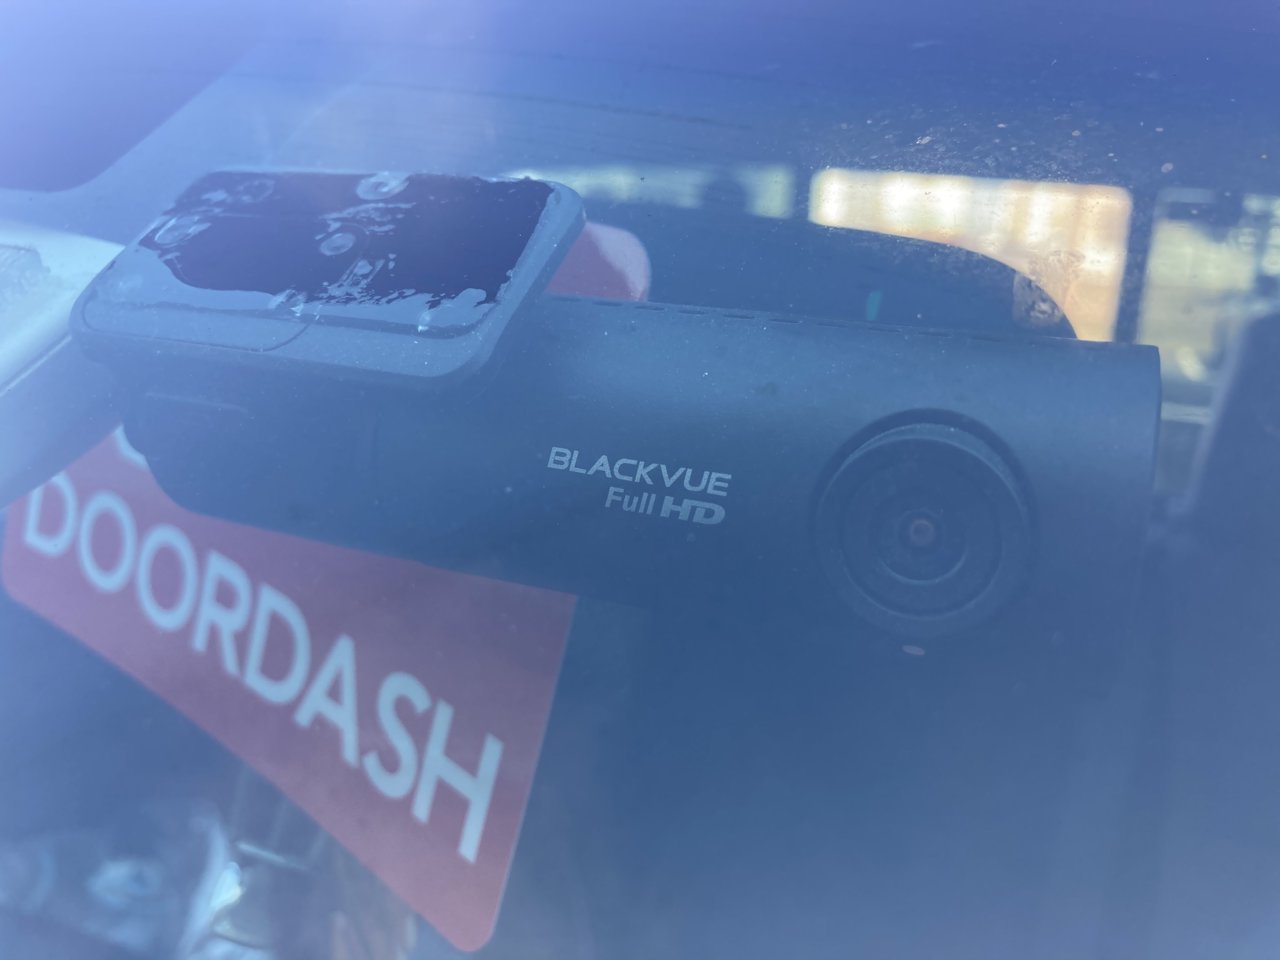 2021 Year the best 4K Dash camera---BlueSkySea B4K UHD dash cam for car